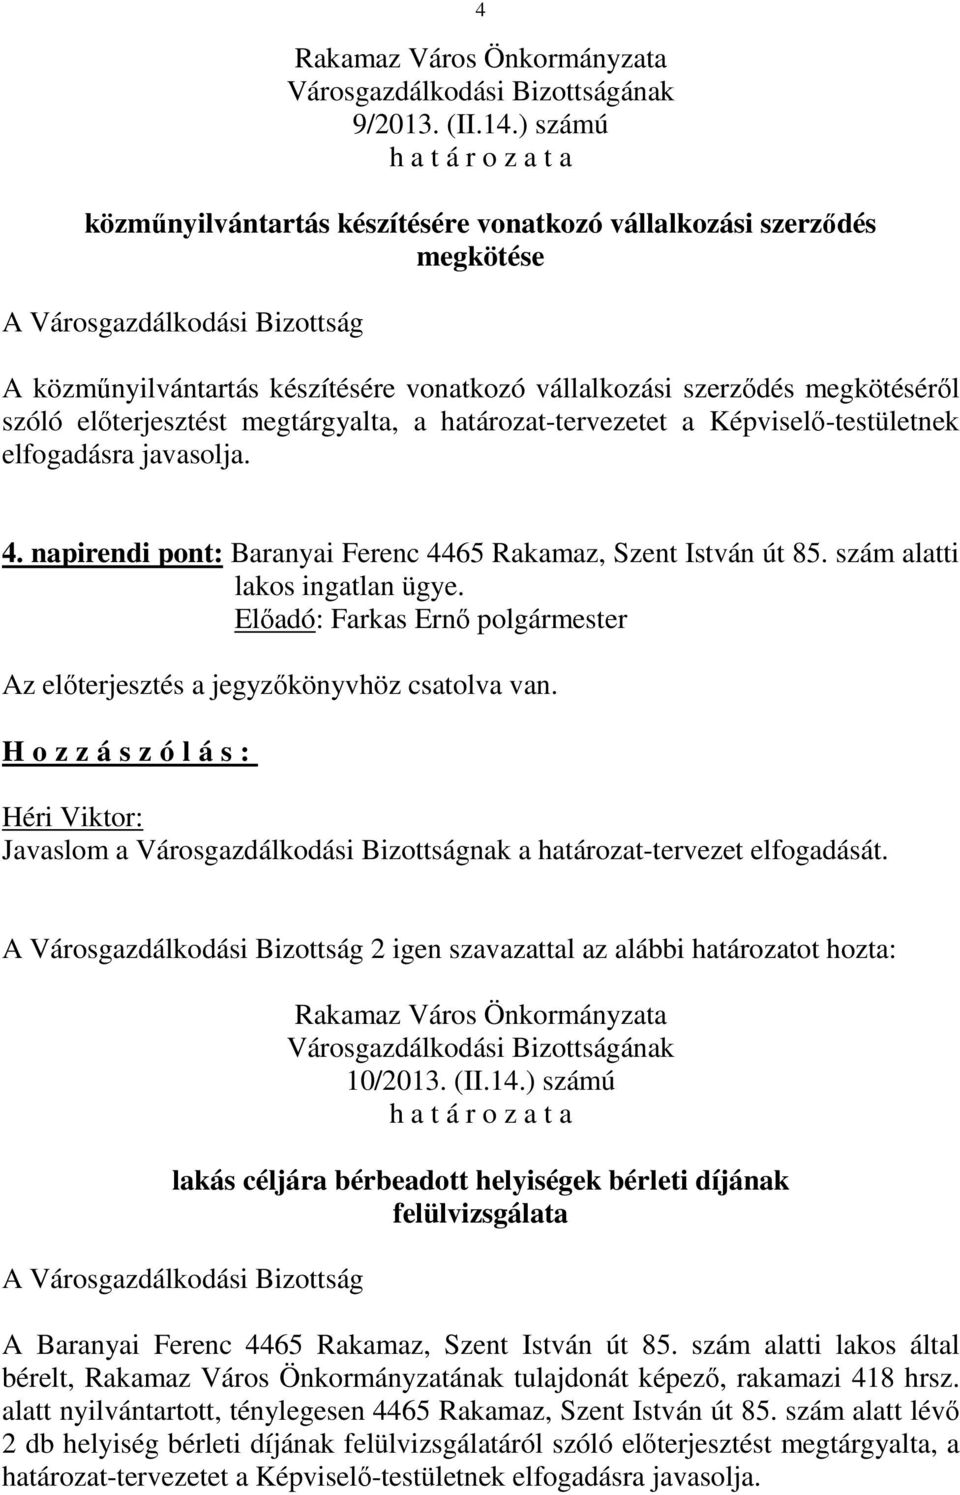 határozat-tervezetet a Képviselő-testületnek 4. napirendi pont: Baranyai Ferenc 4465 Rakamaz, Szent István út 85. szám alatti lakos ingatlan ügye. 10/2013. (II.14.